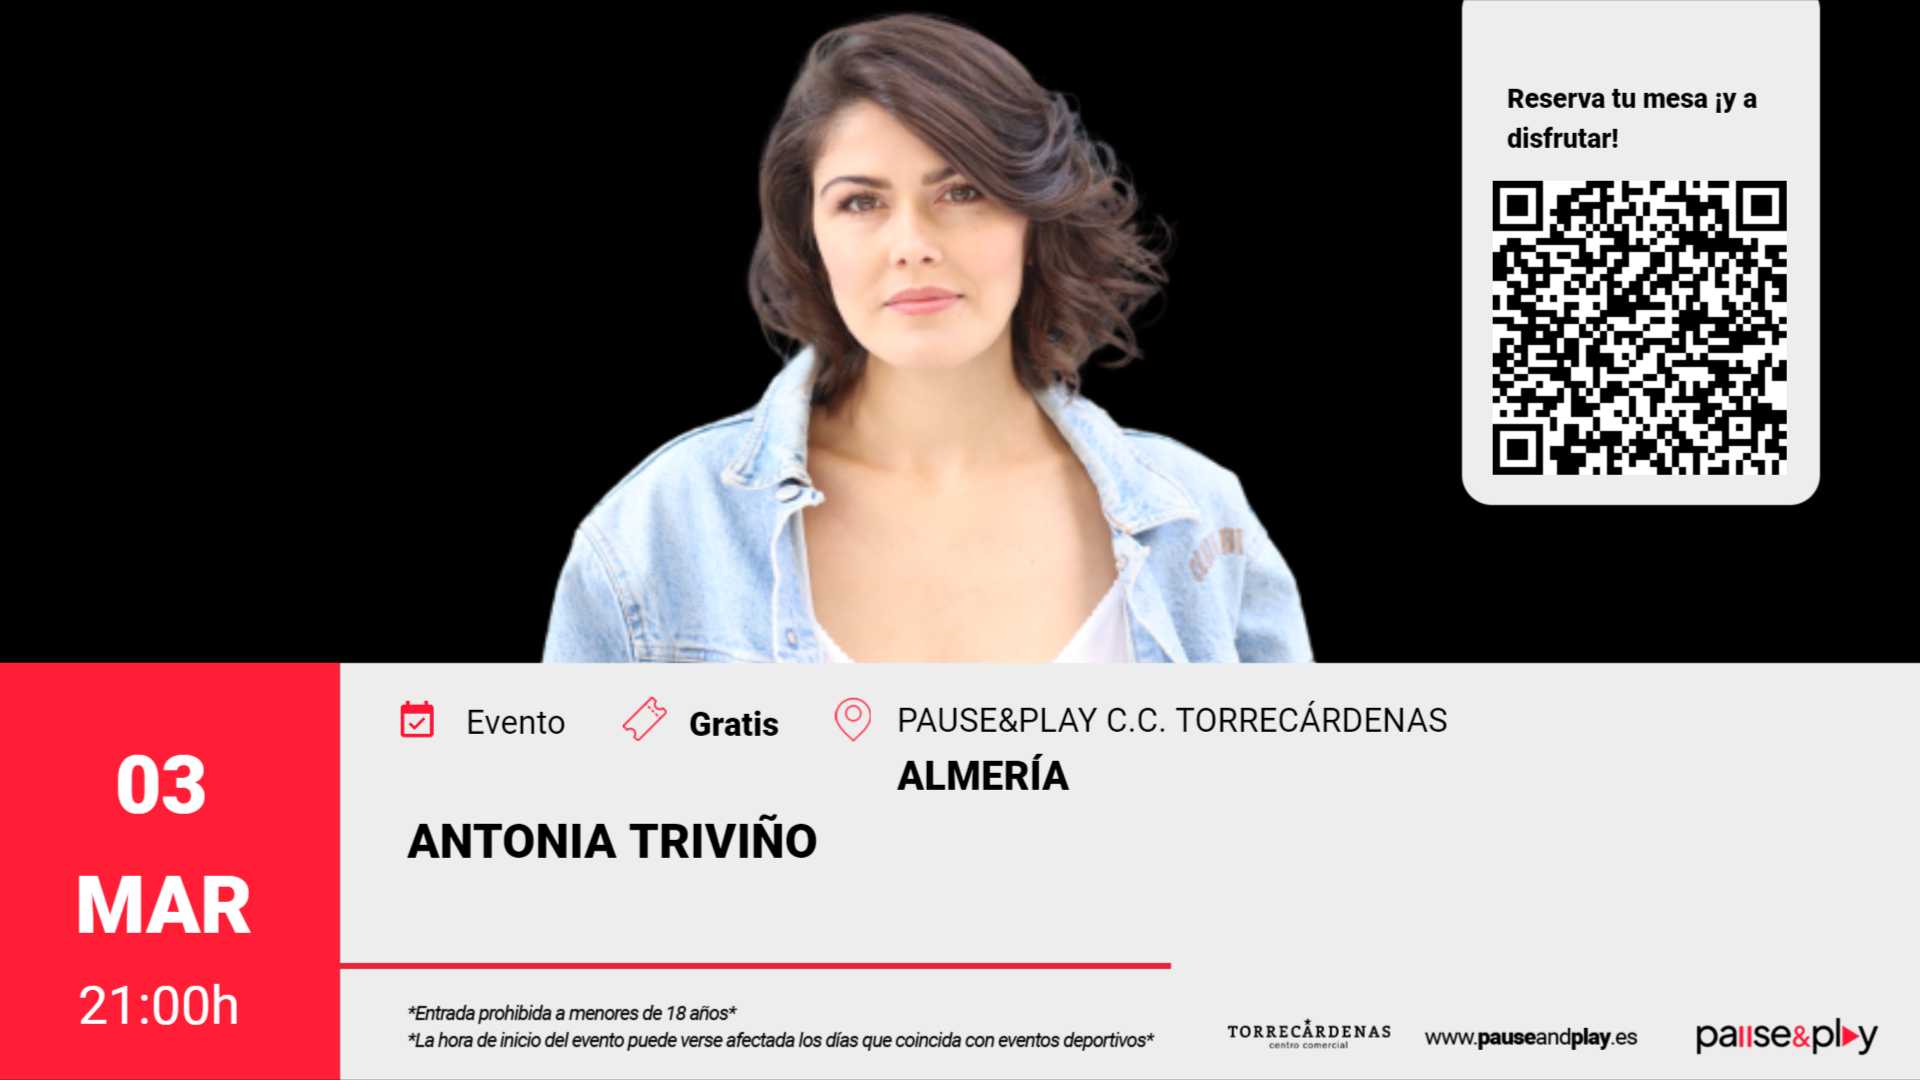 Monólogo Antonia Triviño Pause&Play C.C. Torrecárdenas (Almeria)